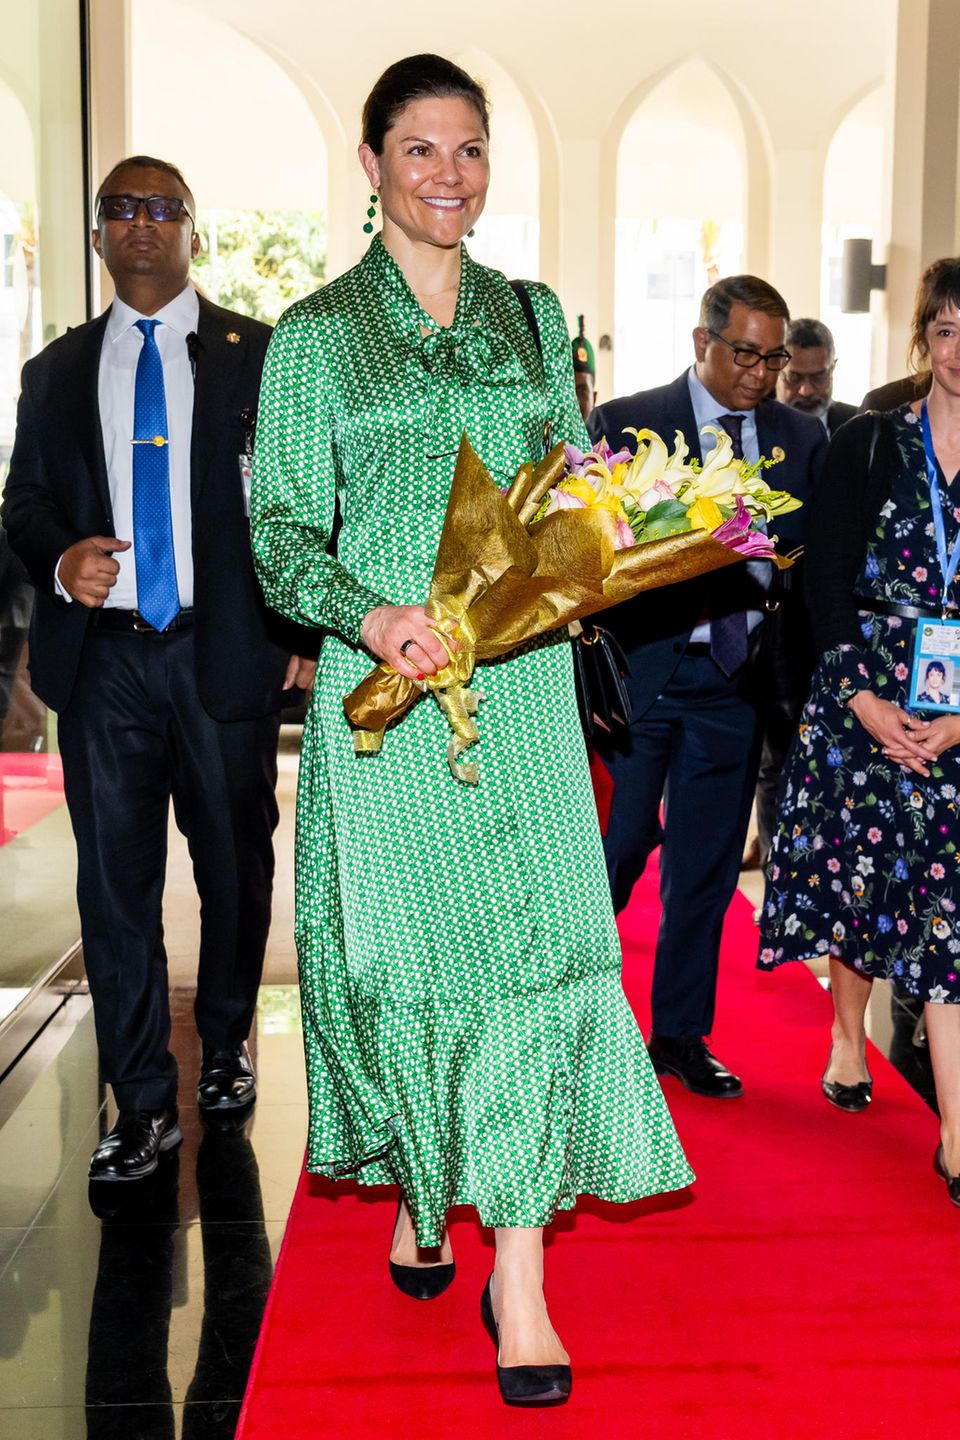 In einem verspielten, aber eleganten Maxidress von Dea Kudibal stattet Kronprinzessin Victoria von Schweden Bangladesch einen viertägigen Besuch ab. Sie fungiert bei diesem Besuch in ihrer Funktion als Sonderbotschafterin des Entwicklungsprogramms der Vereinten Nationen (UNDP). Zu ihrem grünen Kleid kombiniert sie passende Ohrringe mit grünen Steinen und schwarze Pumps.